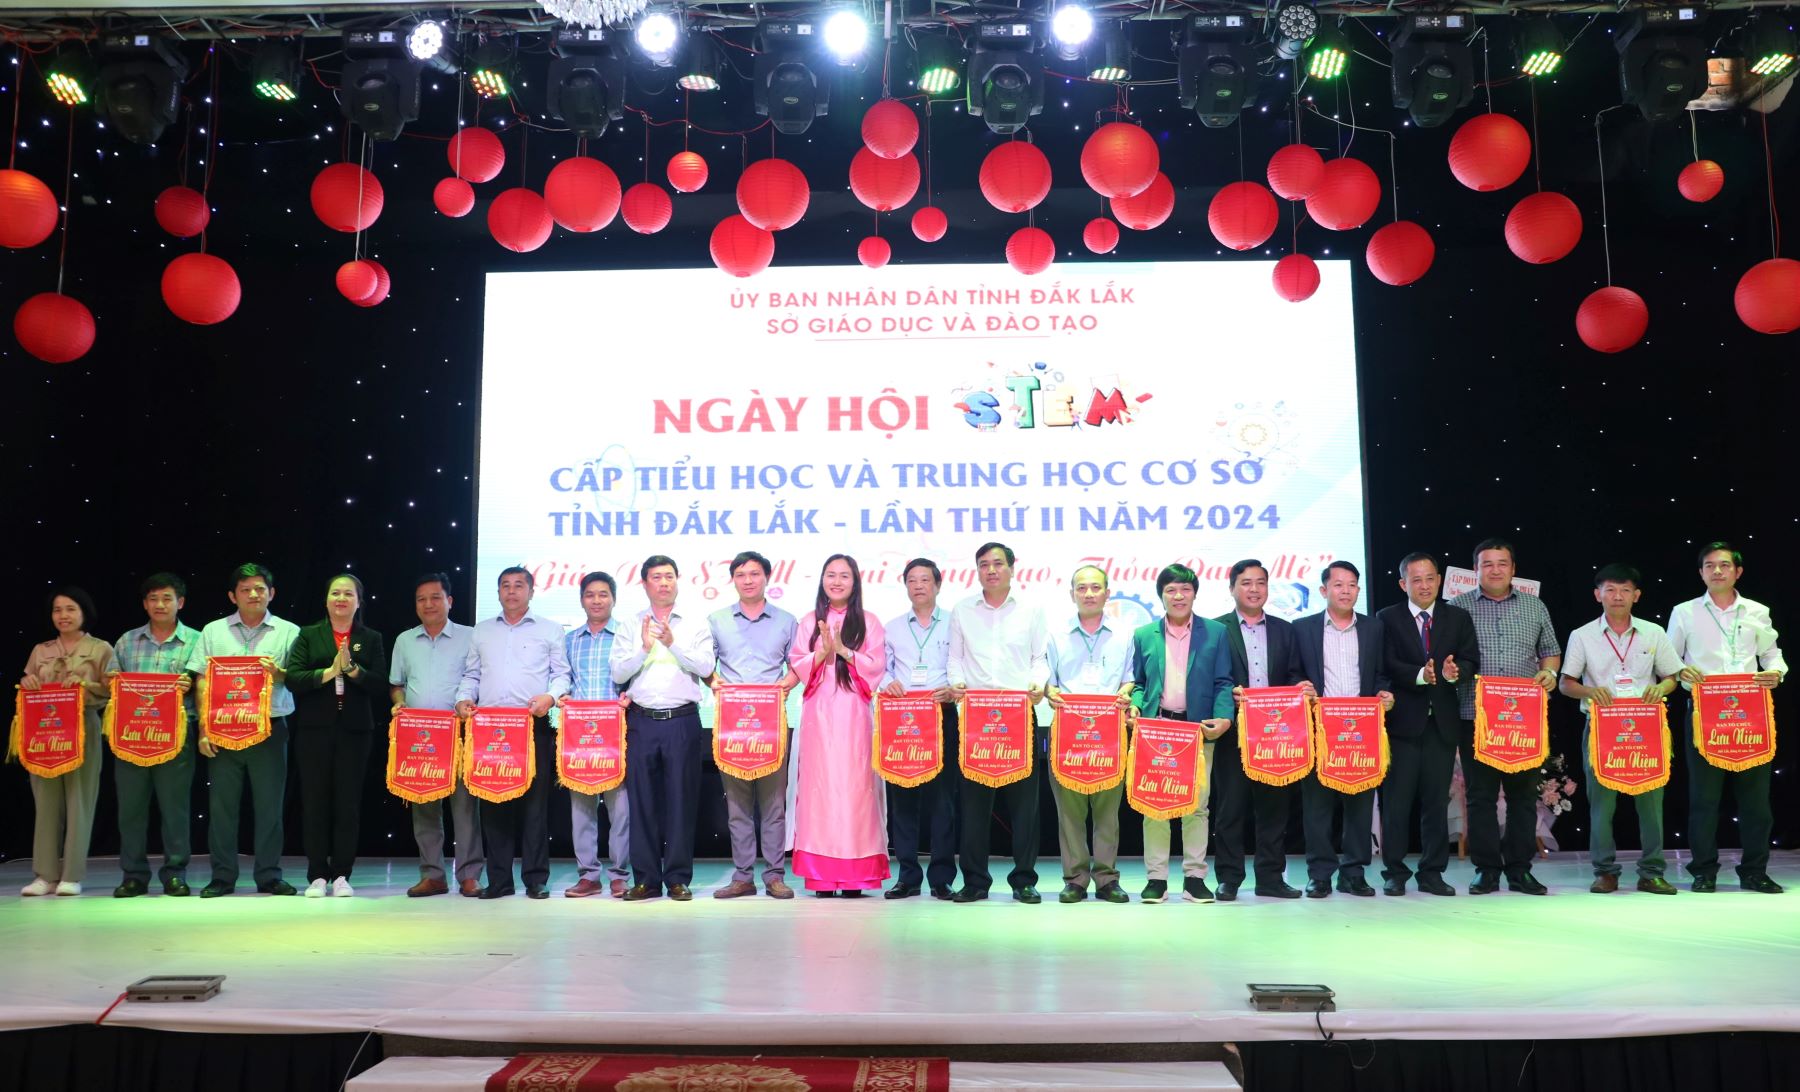 Khai mạc Ngày hội STEM cấp tiểu học và THCS tỉnh Đắk Lắk lần thứ II – năm 2024